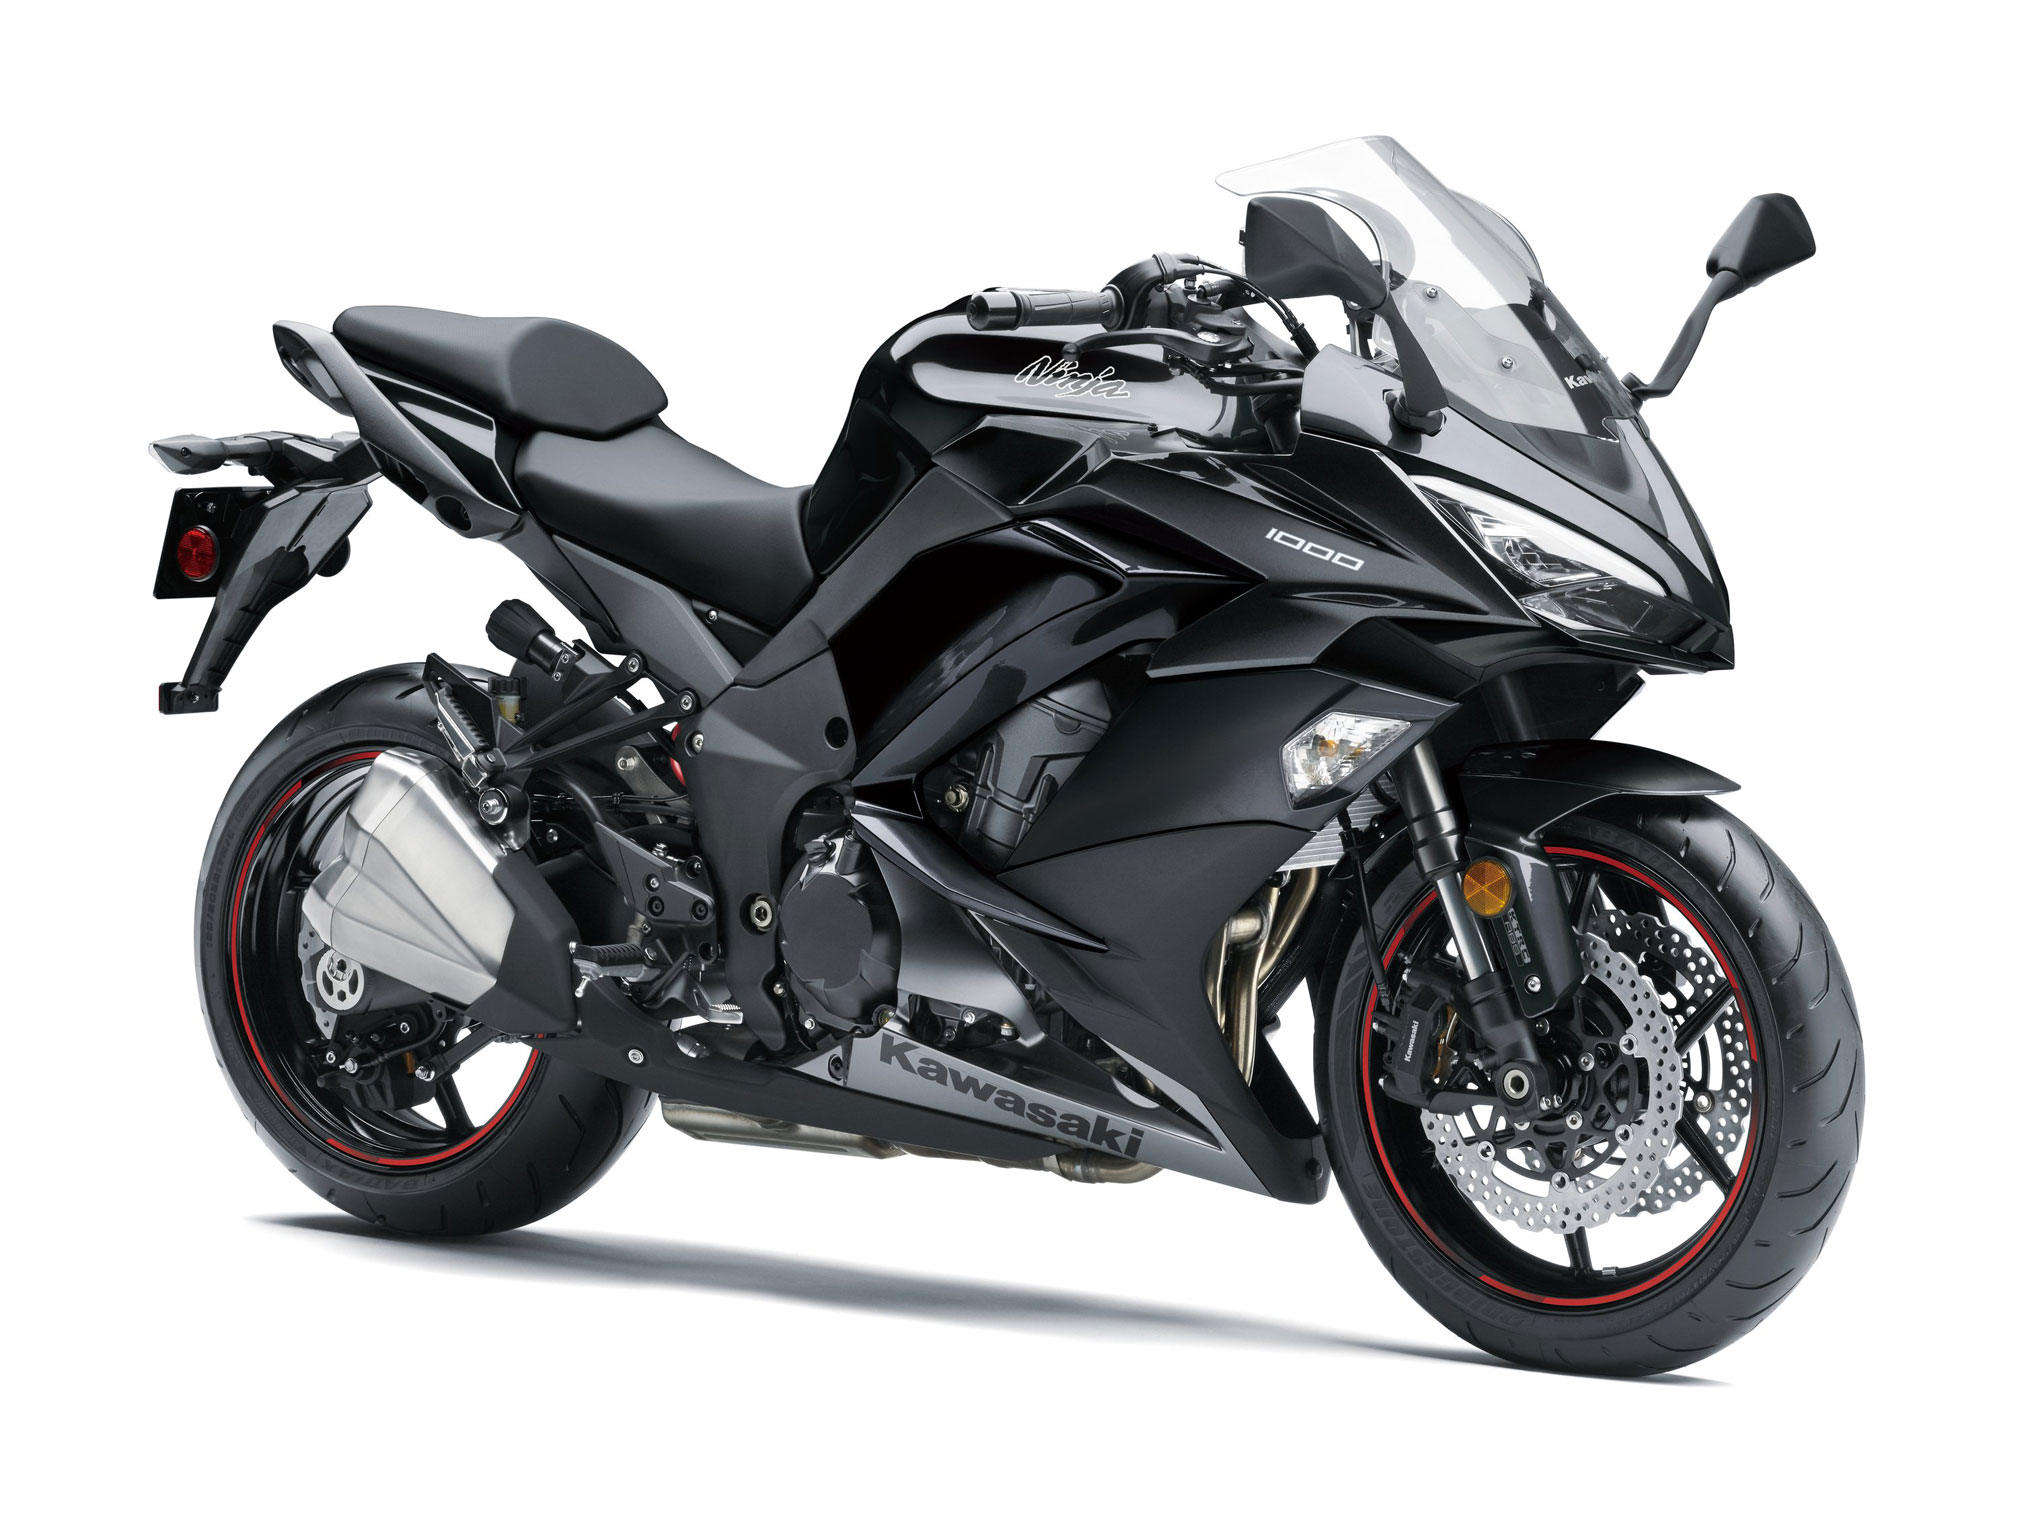 2018 Kawasaki Ninja 1000 ABS Review • Total Motorcycle